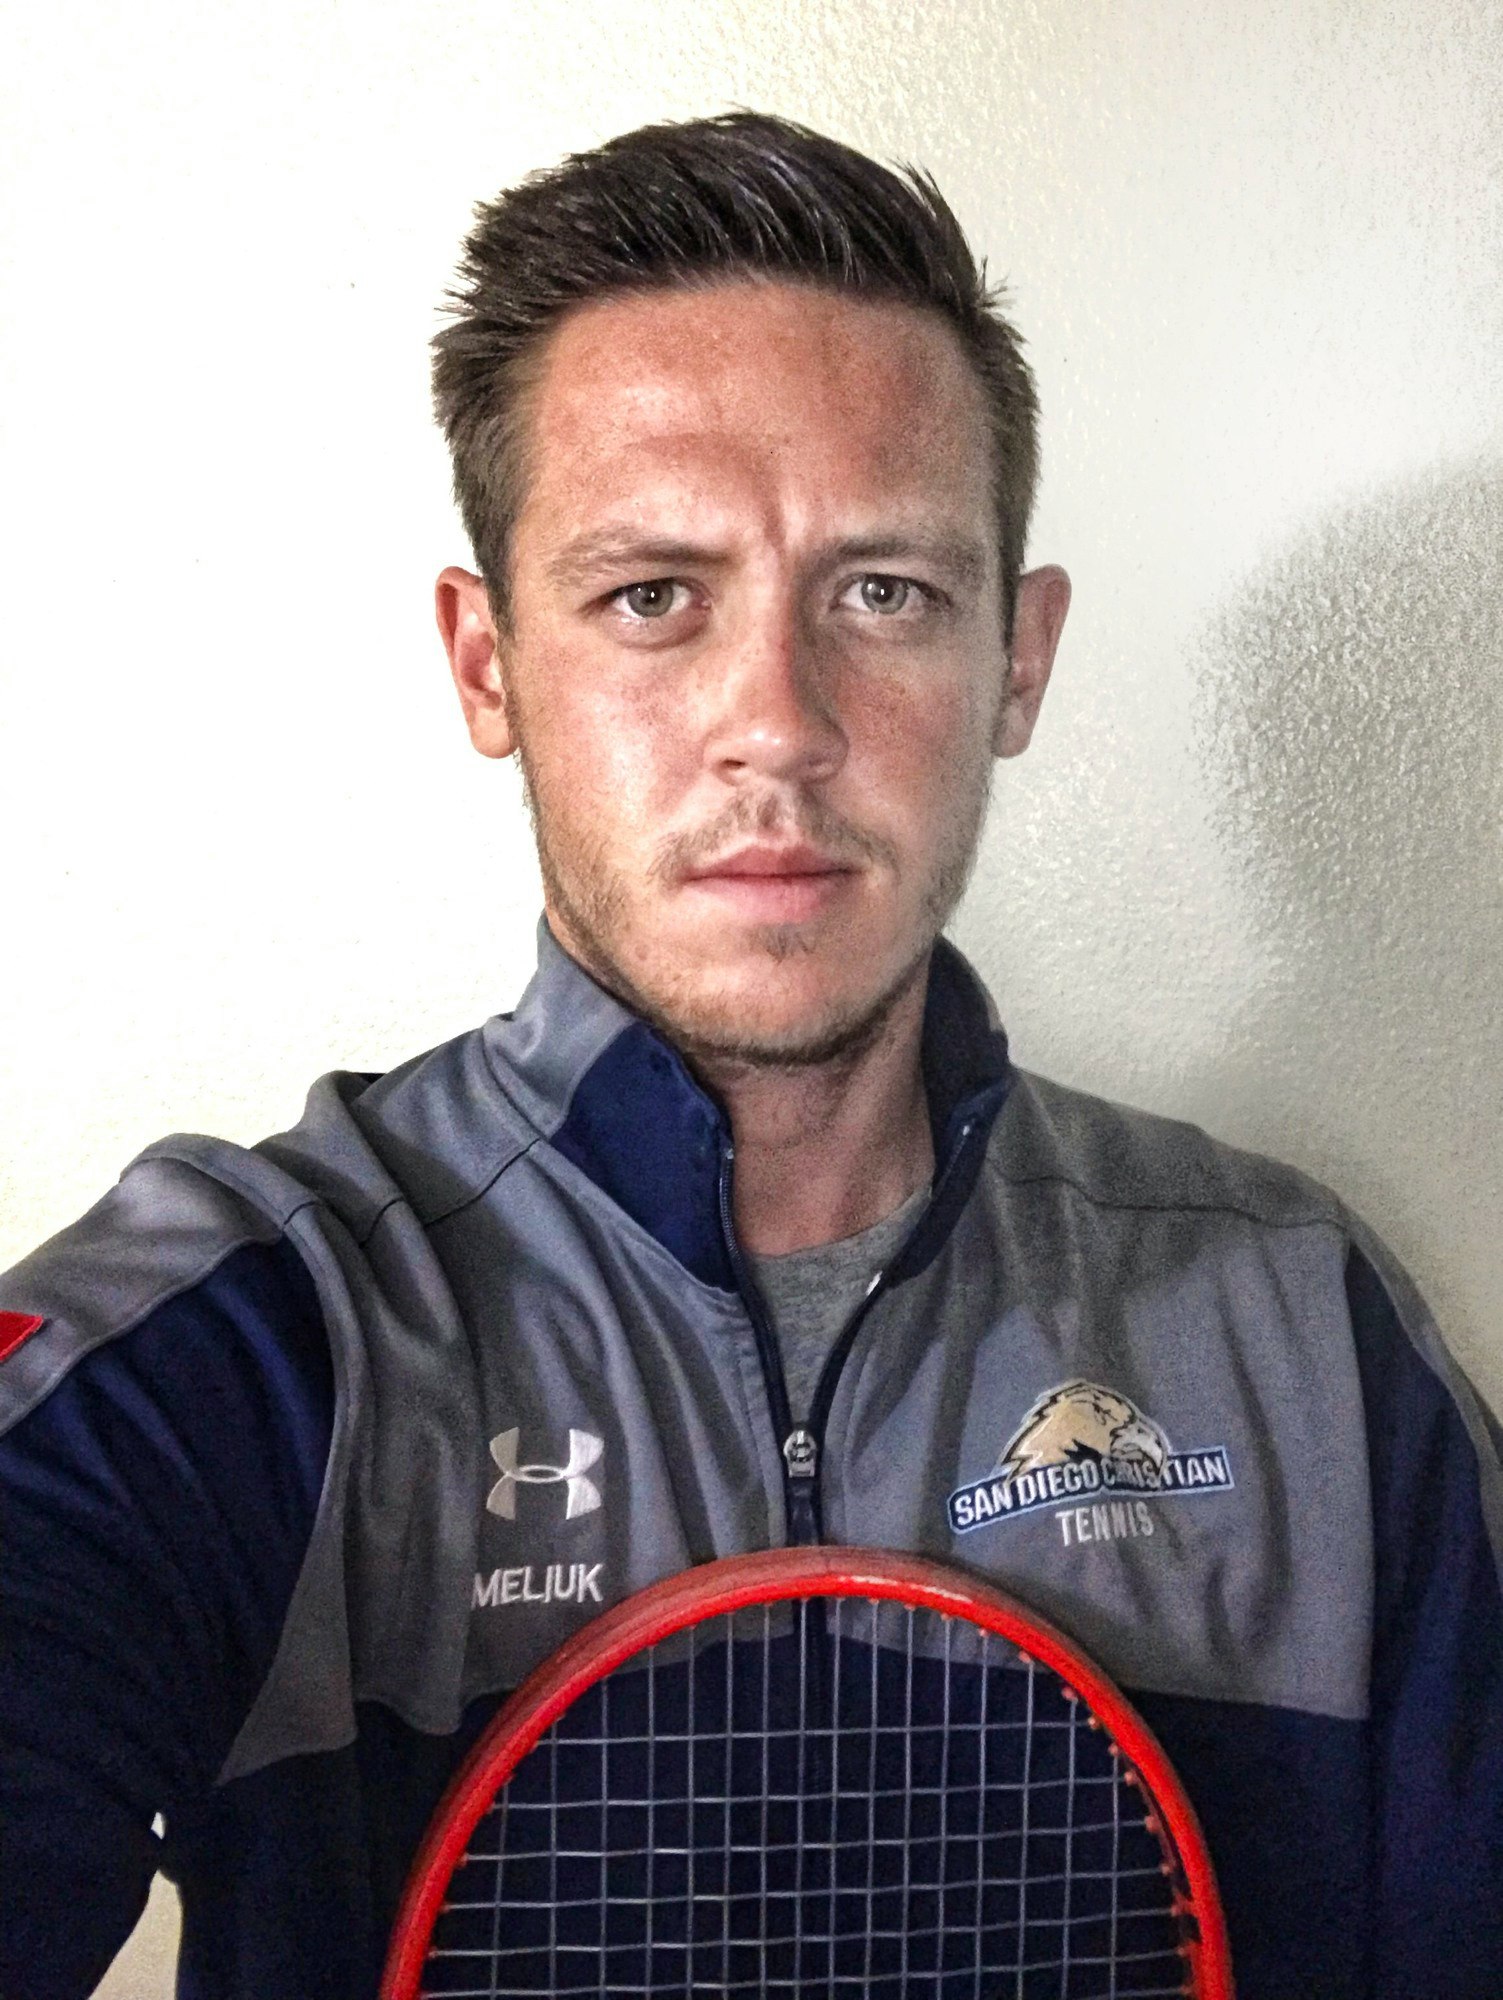 Alex M. teaches tennis lessons in Fullerton, CA